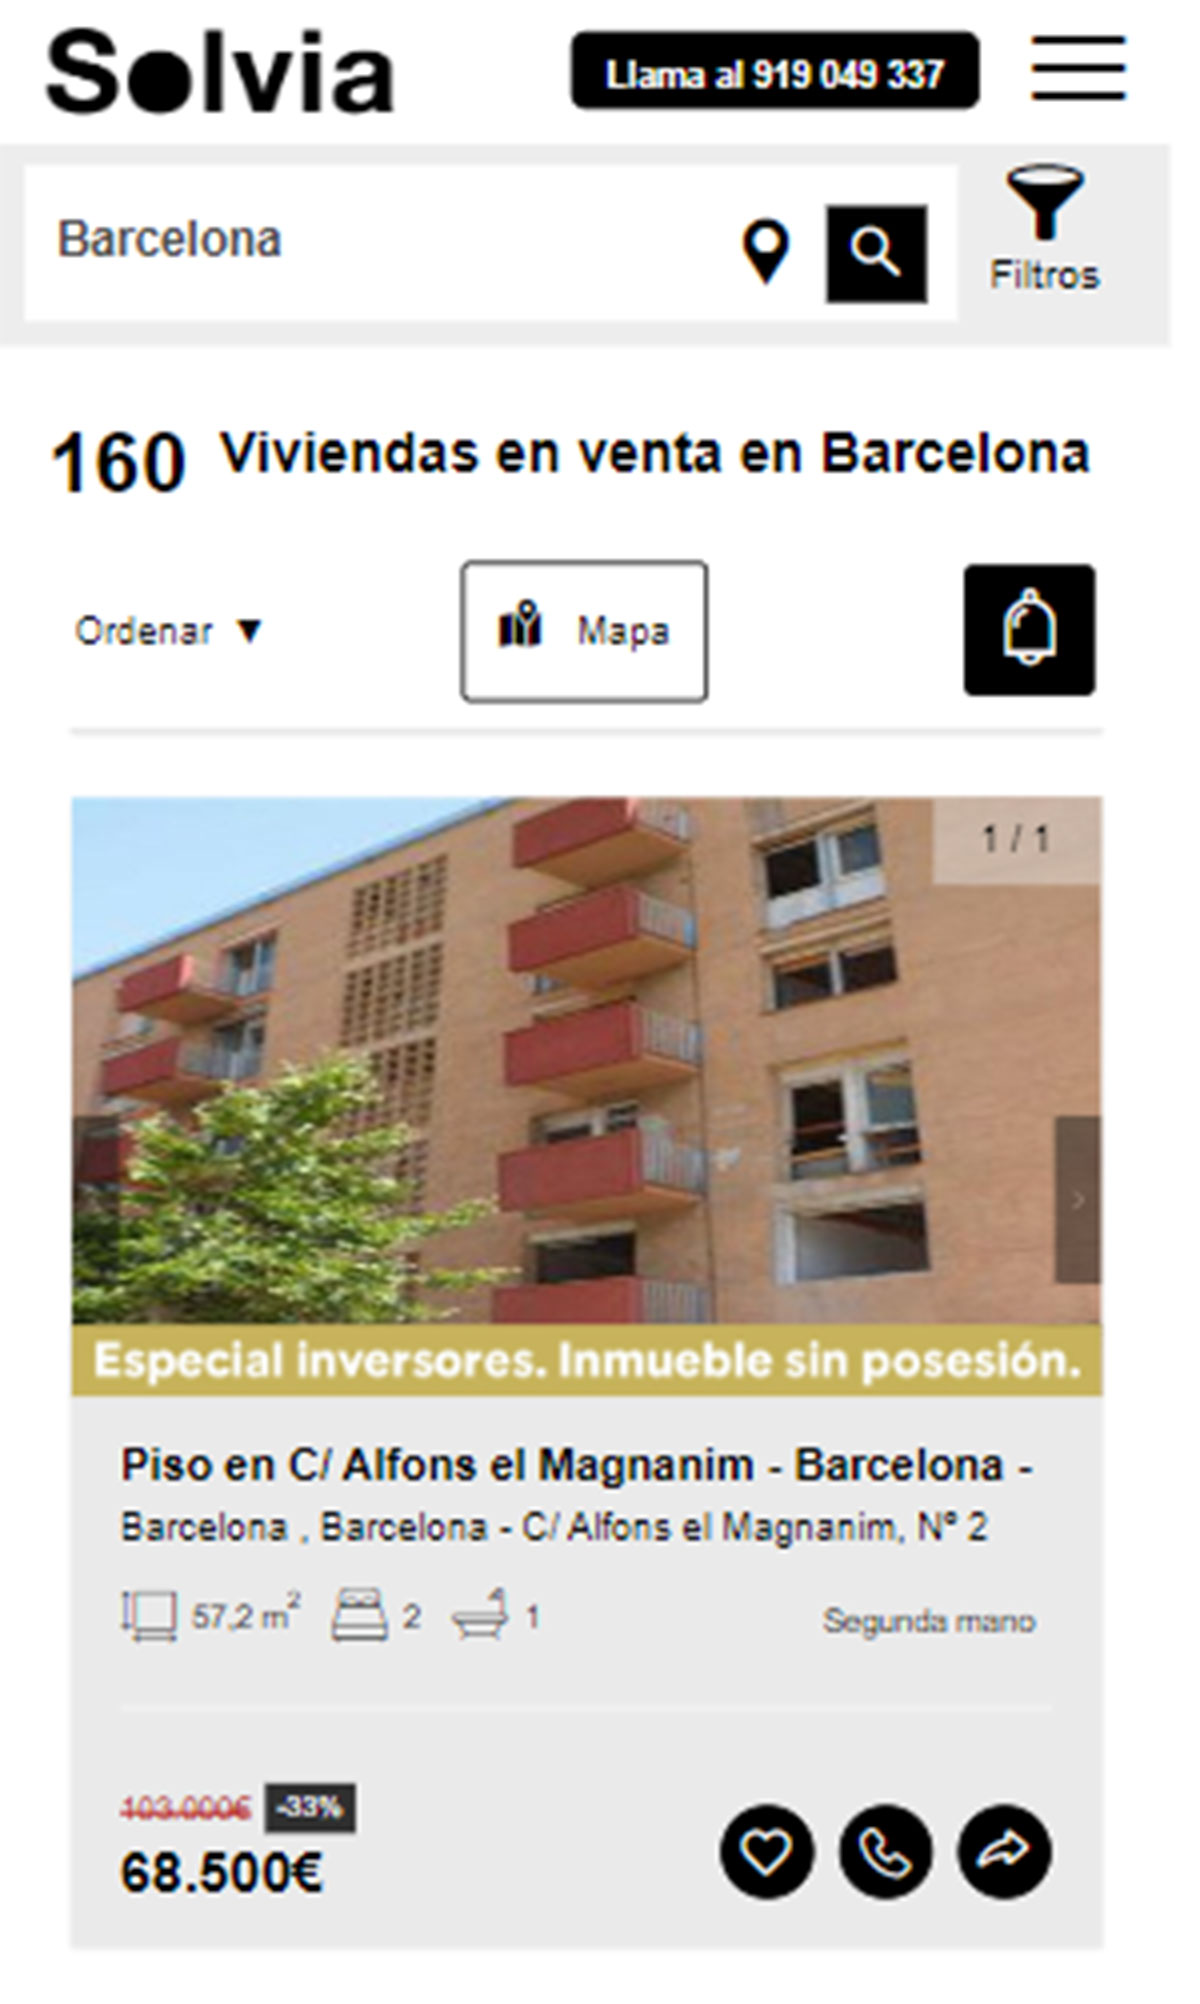 Piso en la ciudad de Barcelona por 68.500 euros